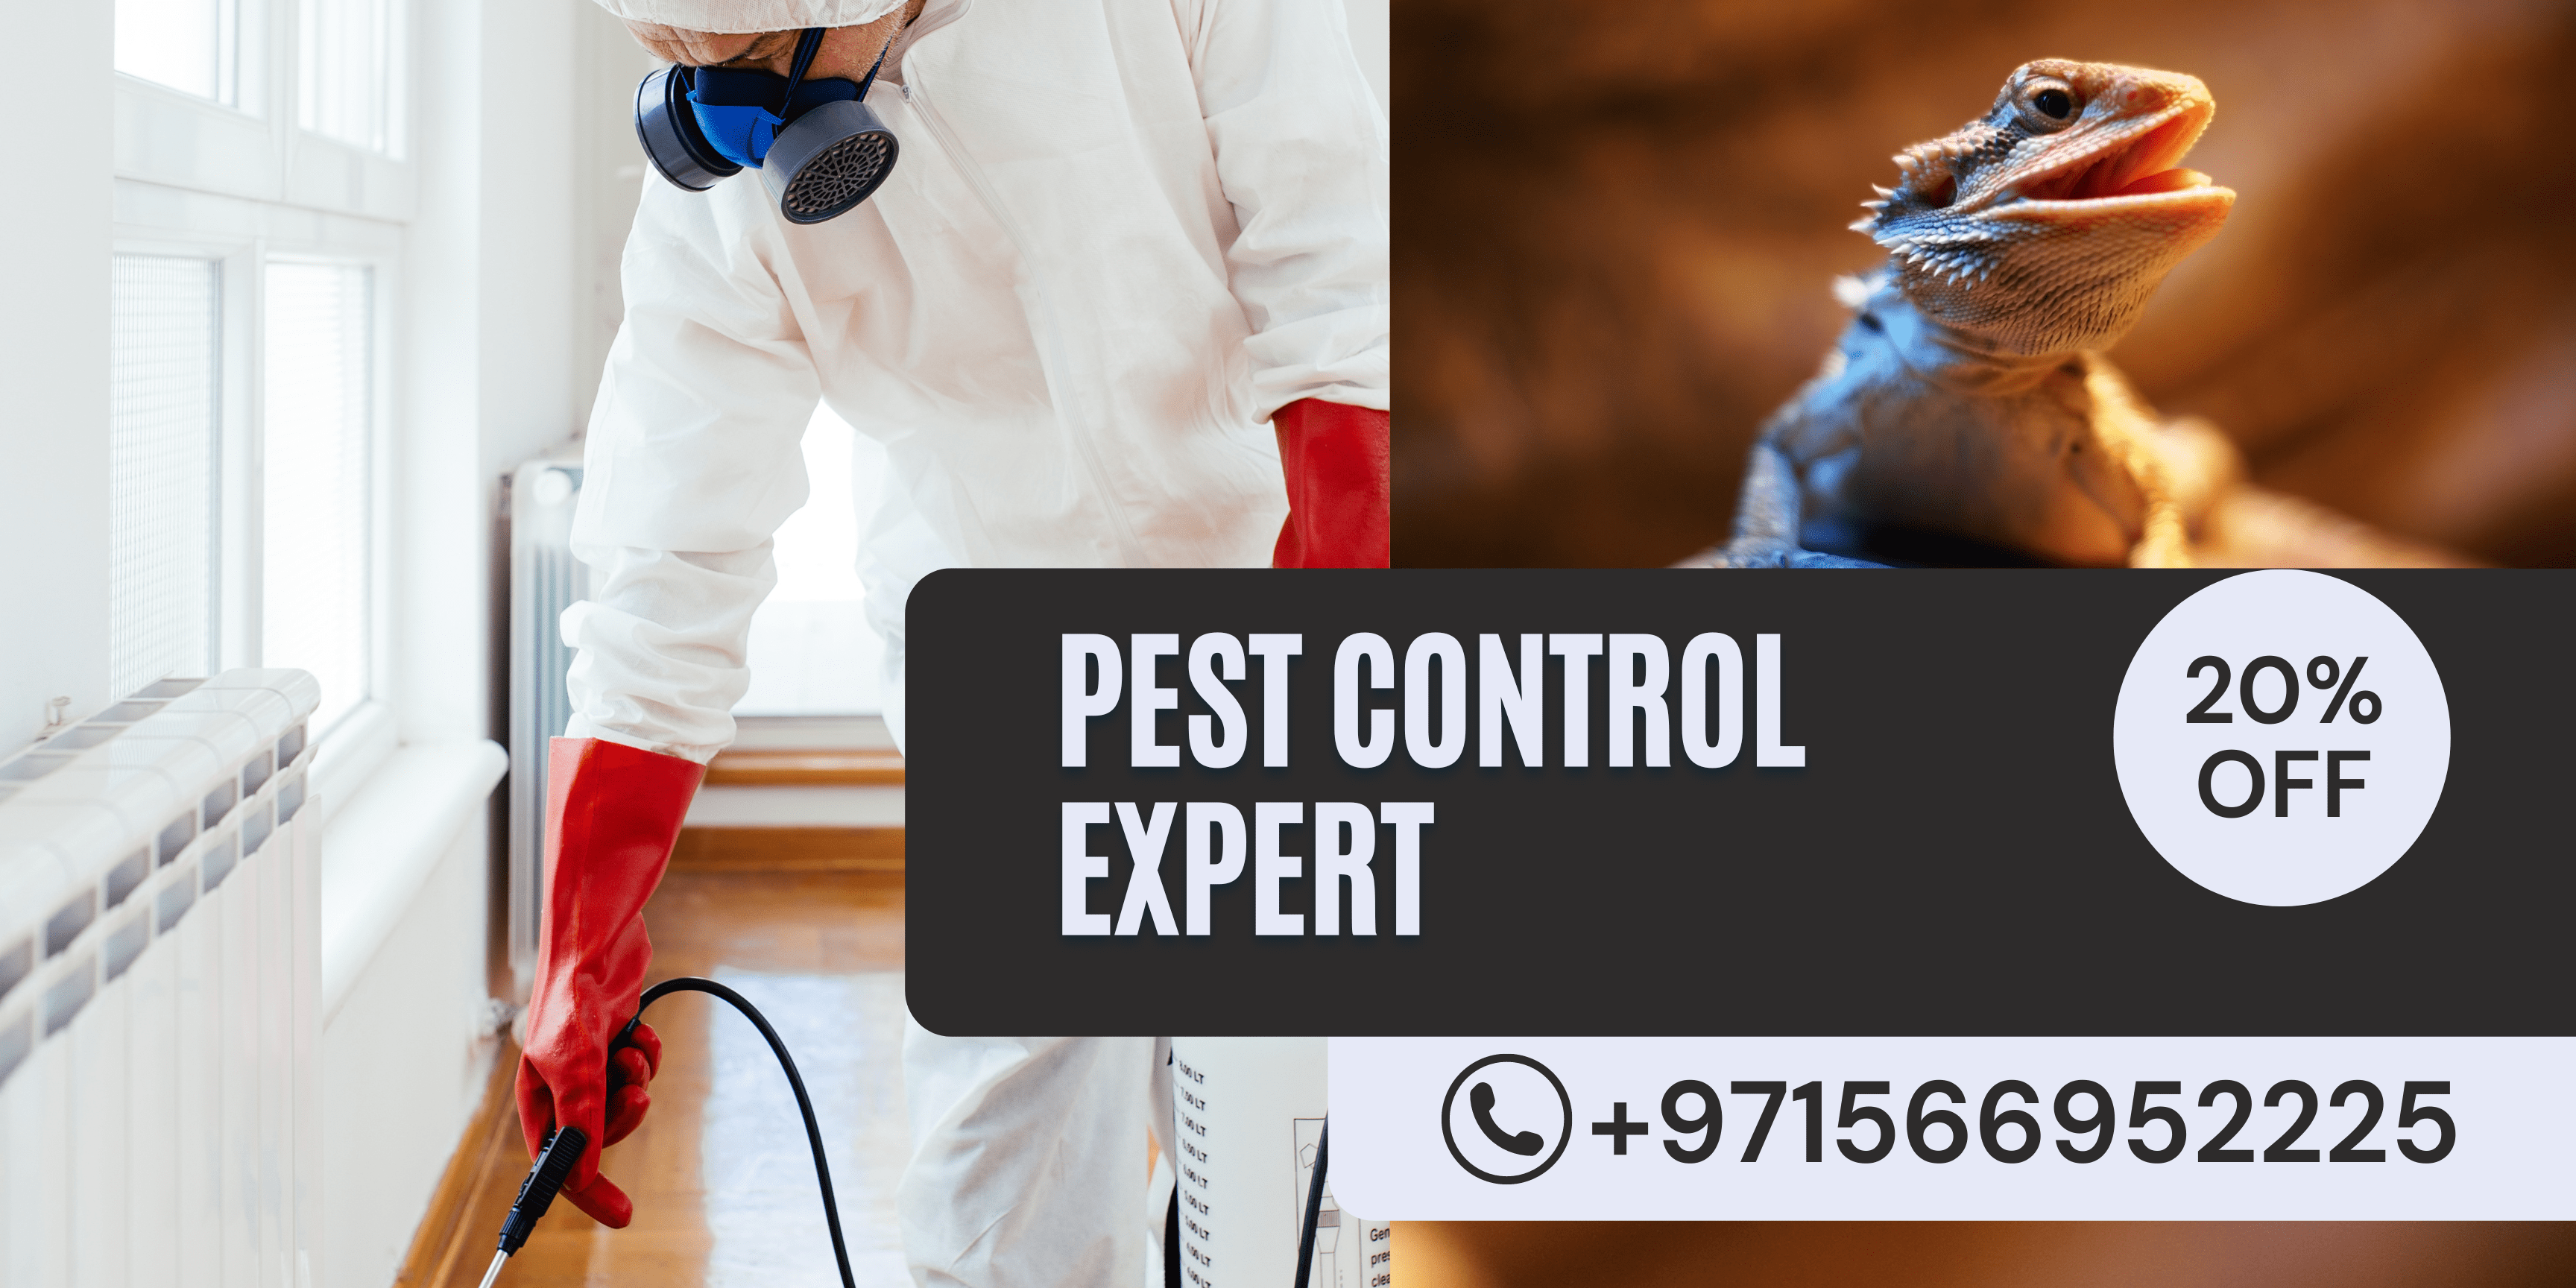 lizard-pest-control-services-dubai